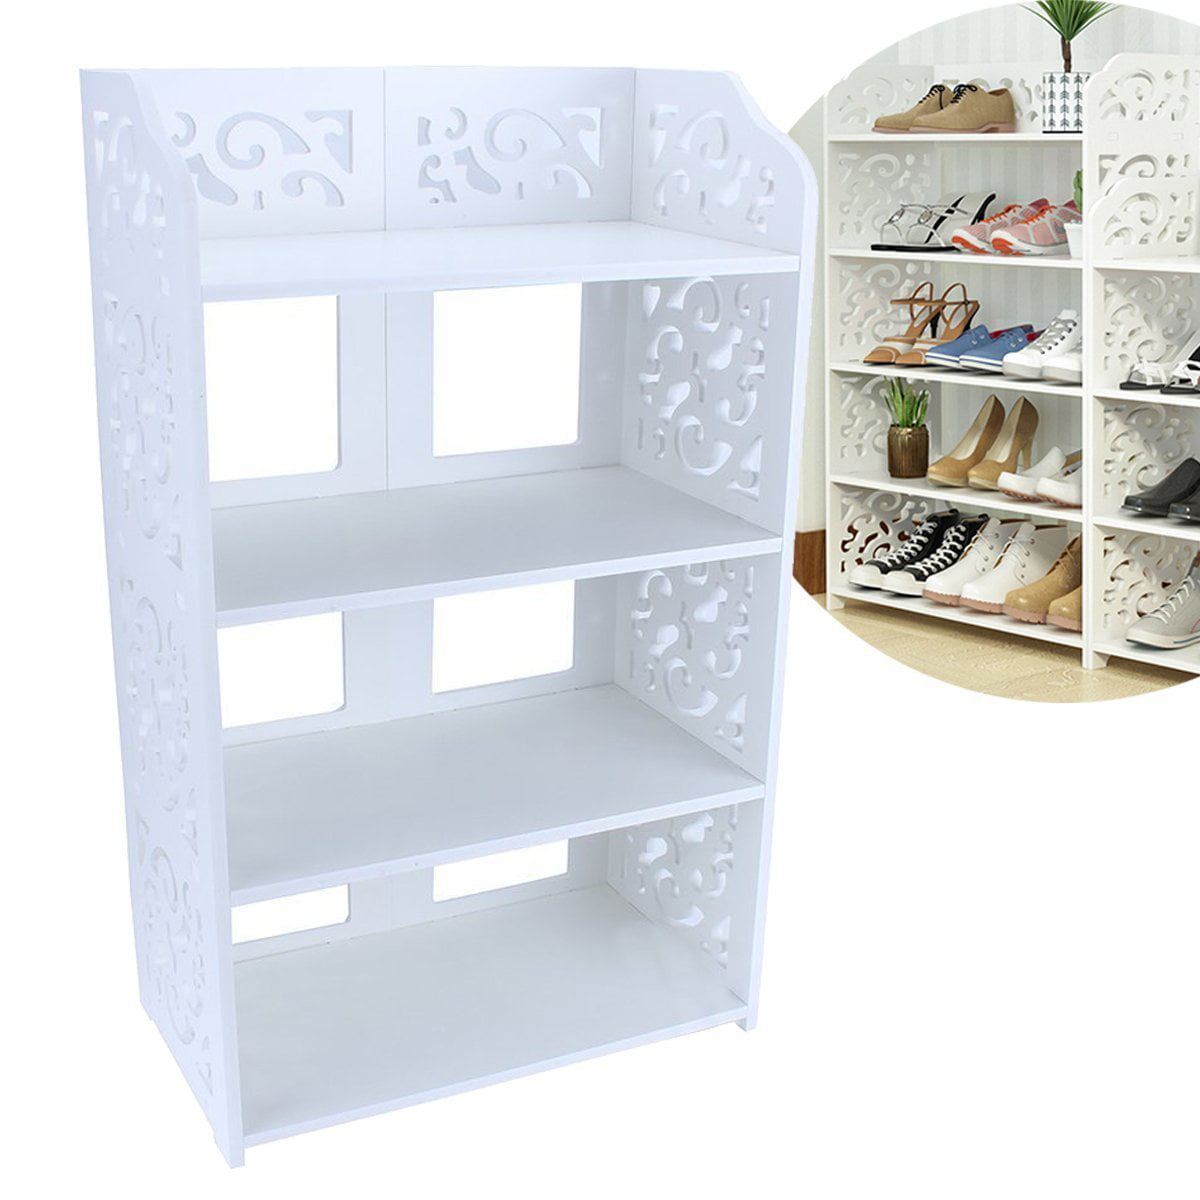 Anggrek Home Carved Shoe Cabinet Storage Organiser Shoe Rack Stand